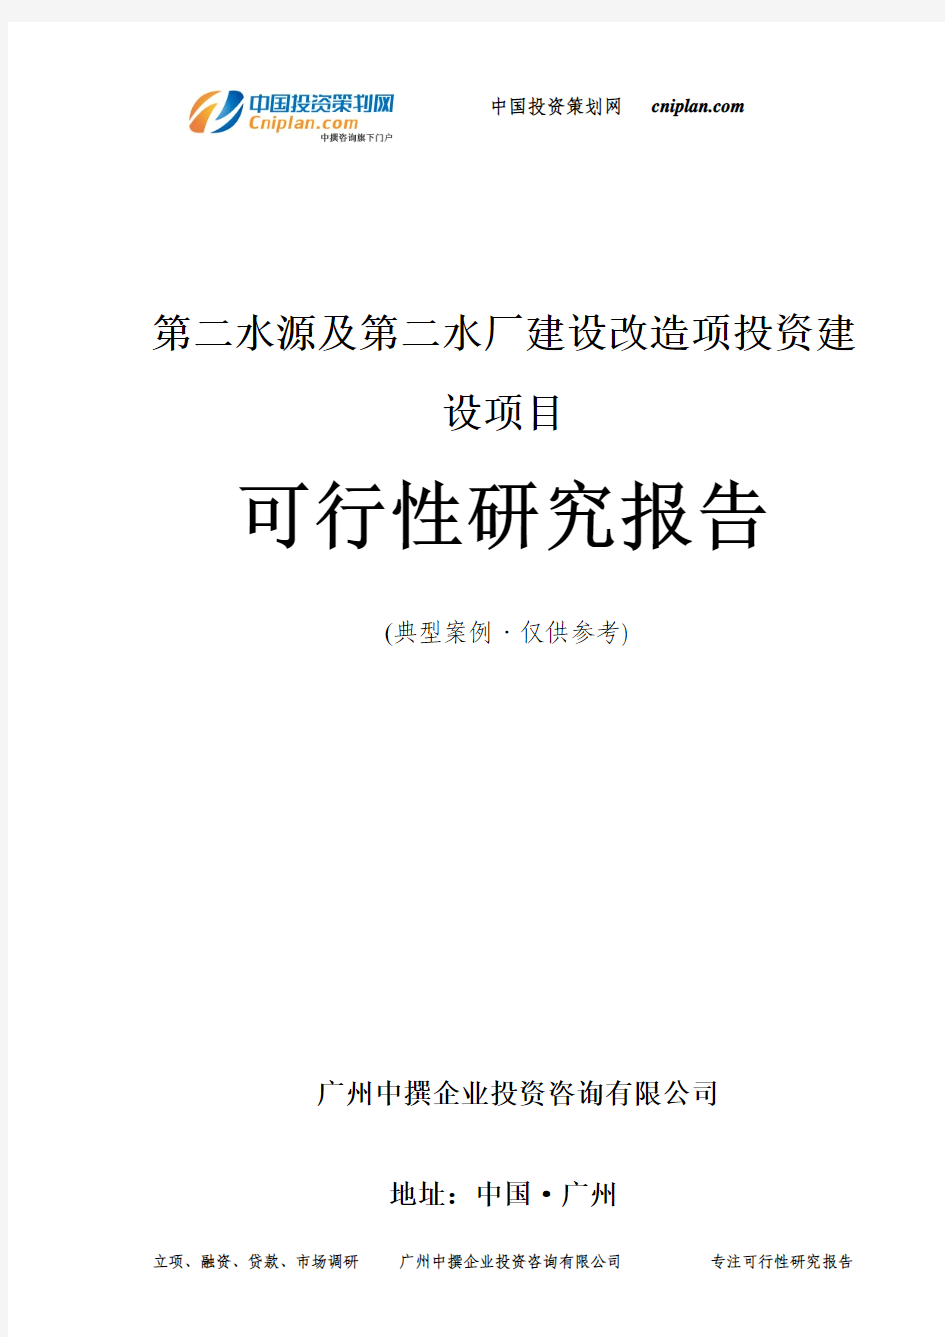 第二水源及第二水厂建设改造项投资建设项目可行性研究报告-广州中撰咨询